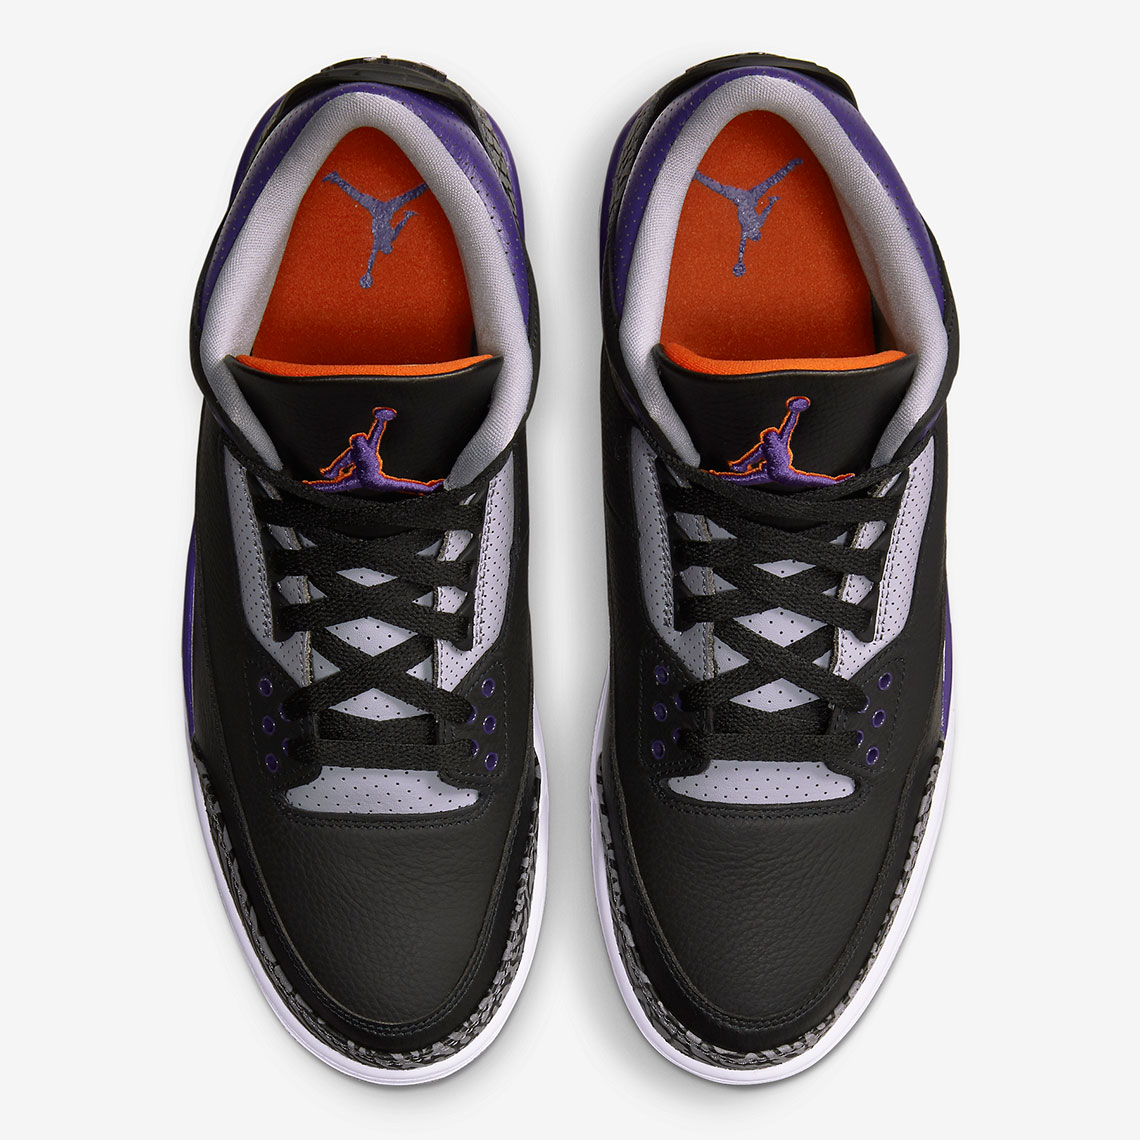 Air Jordan 3 Court Purple Official Images Ct8532 050 2